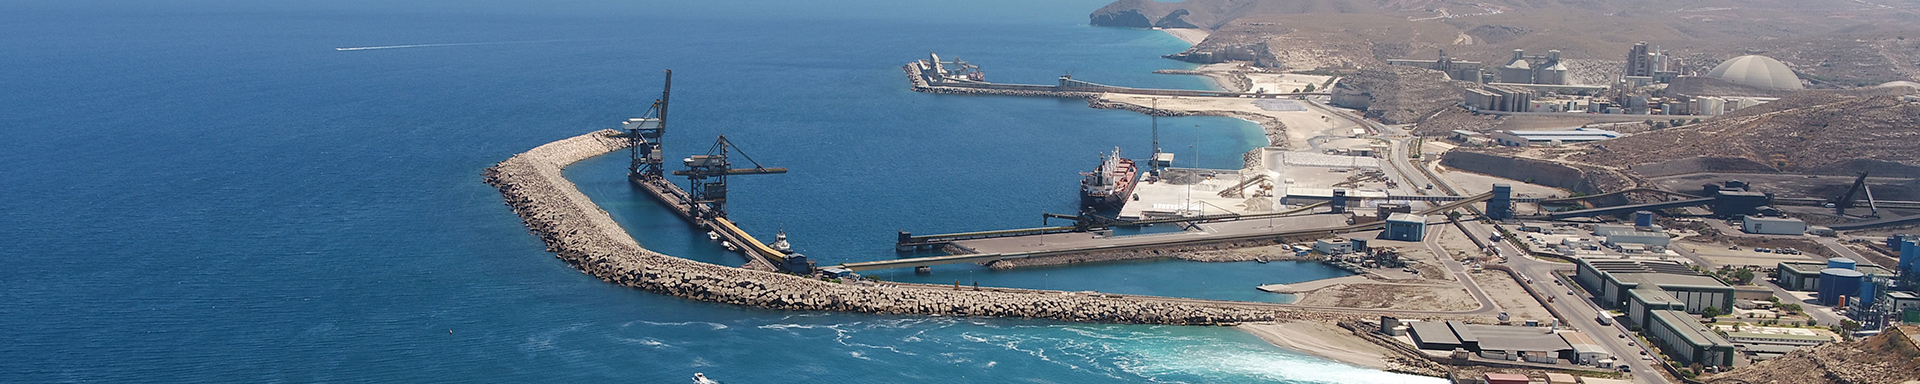 Autoridad Portuaria de Almería